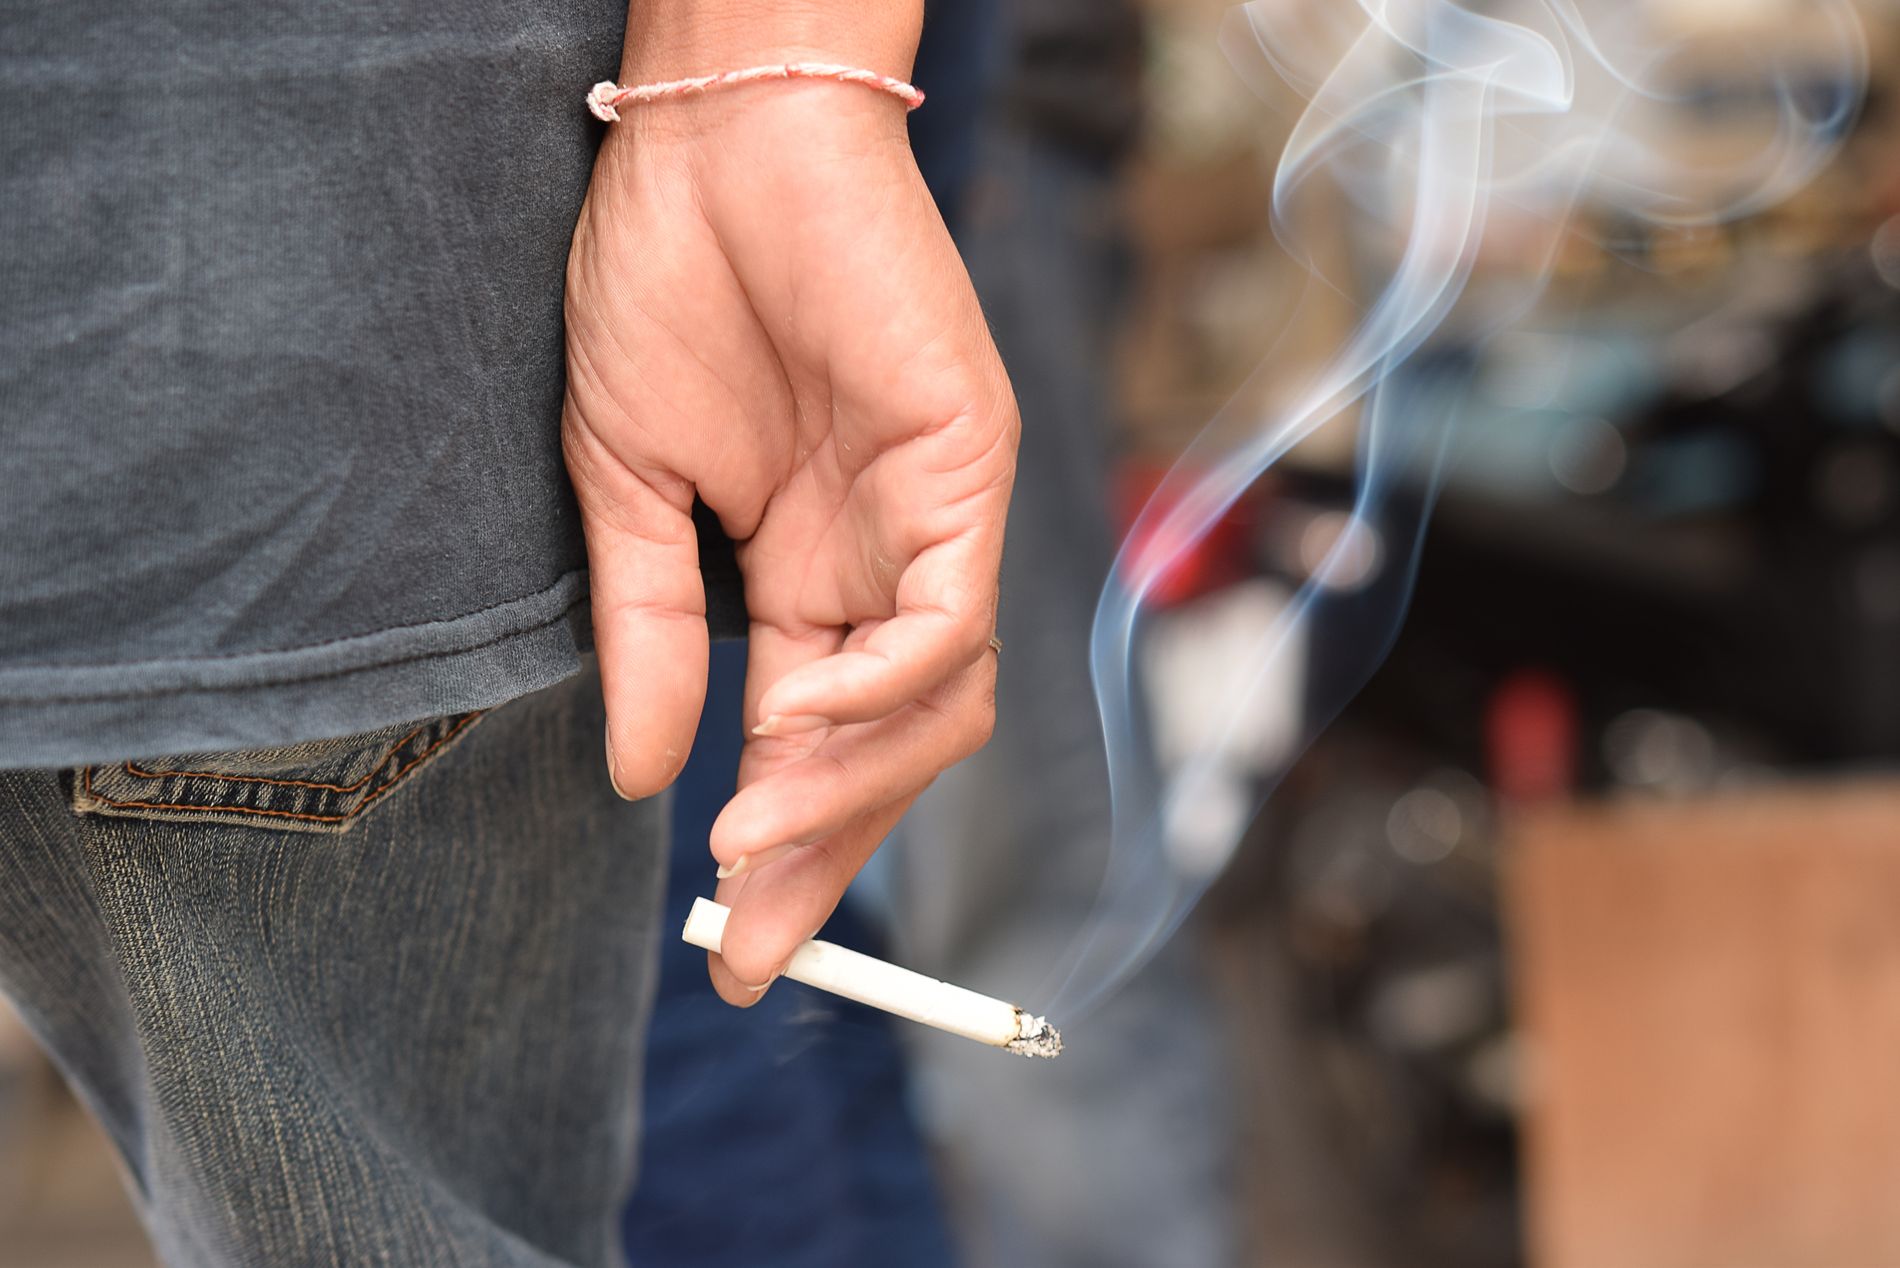 Røyking kan både gi akutte skader mens du er ung, og varige skader som kroppen ikke klarer å reparere igjen, ifølge forskere.